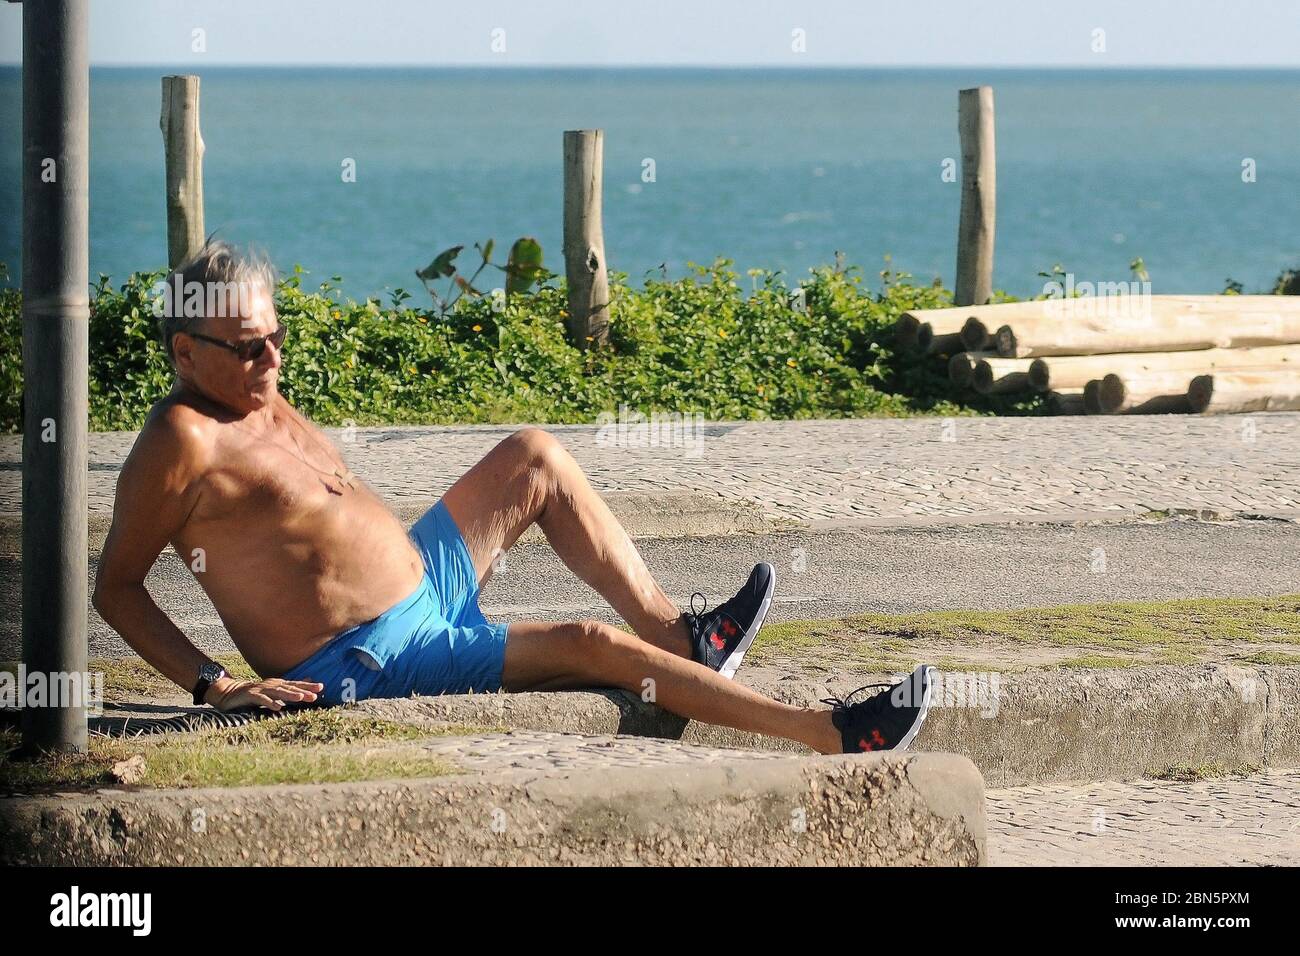 Rio de Janeiro, Brasile, 11 maggio 2020. Uomo anziano senza maschera protettiva durante la pandemia del covid-19, si agguantò e cade sul pavimento del marciapiede di Foto Stock